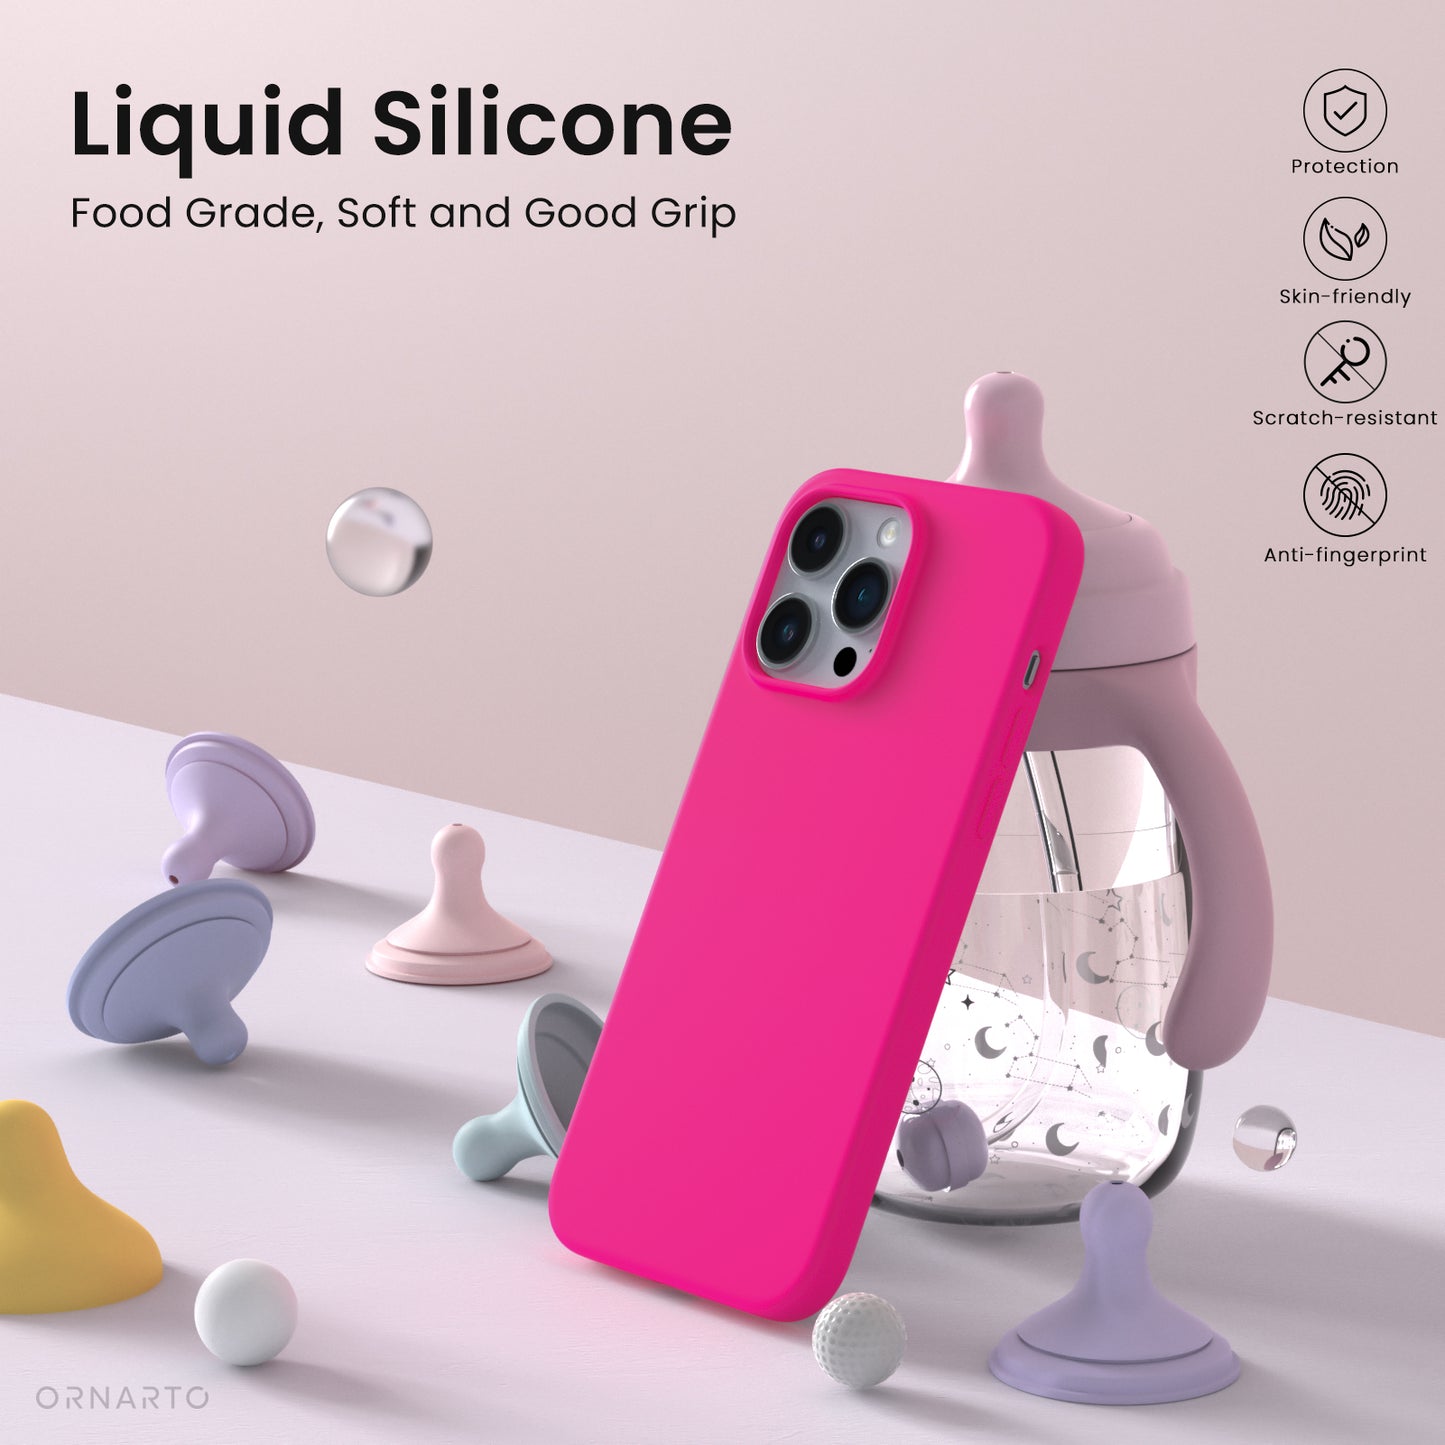 ORNARTO Liquid Silicone iPhone 14 Pro Max Case